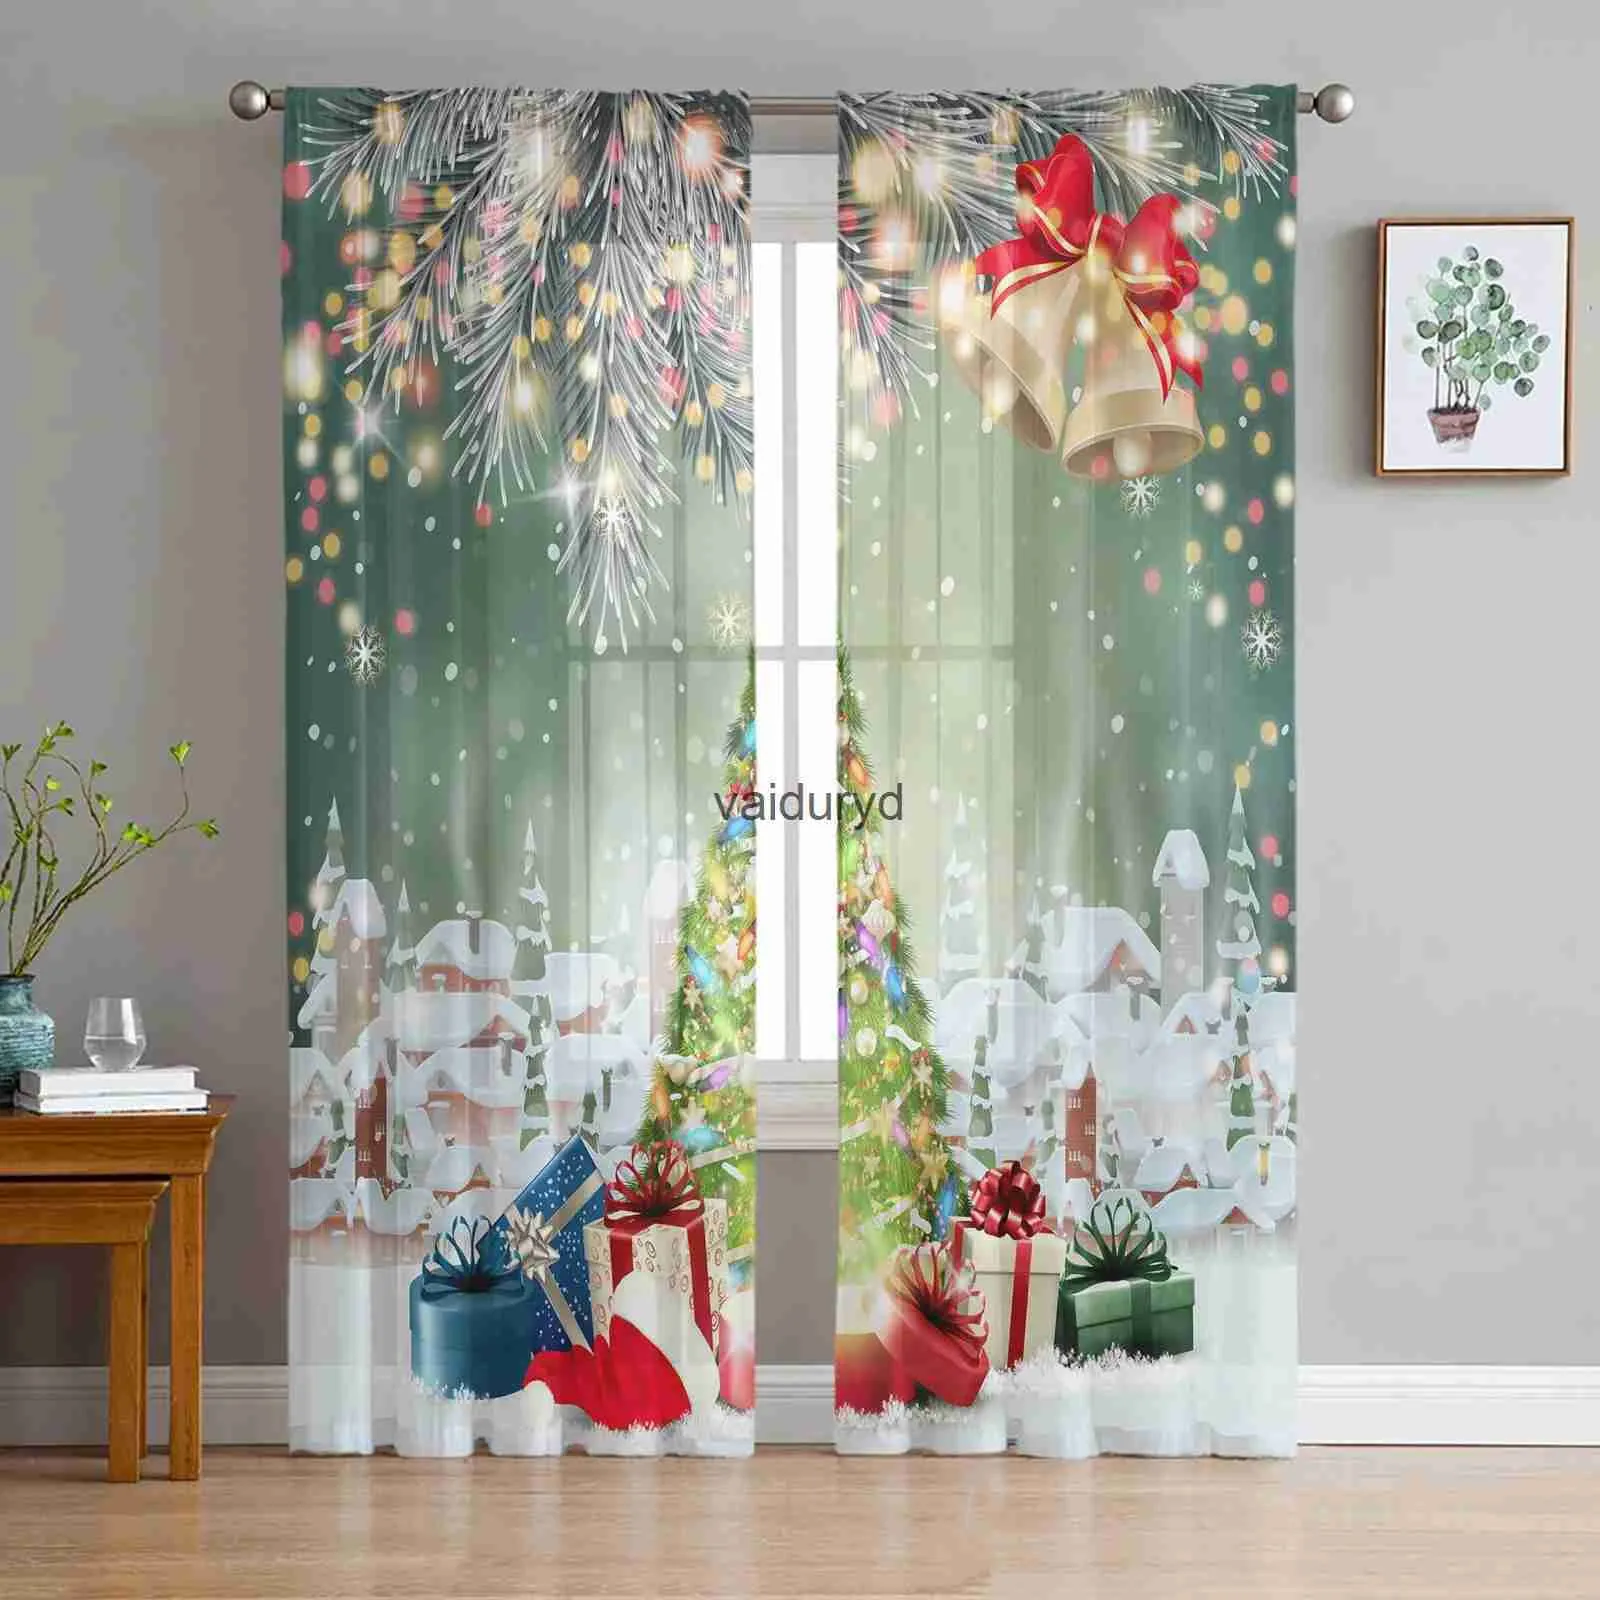 Gardin julgranklockor by snöar tyll ren fönster gardiner för vardagsrum sovrum dekor voile gardiner drapesvaiduryd